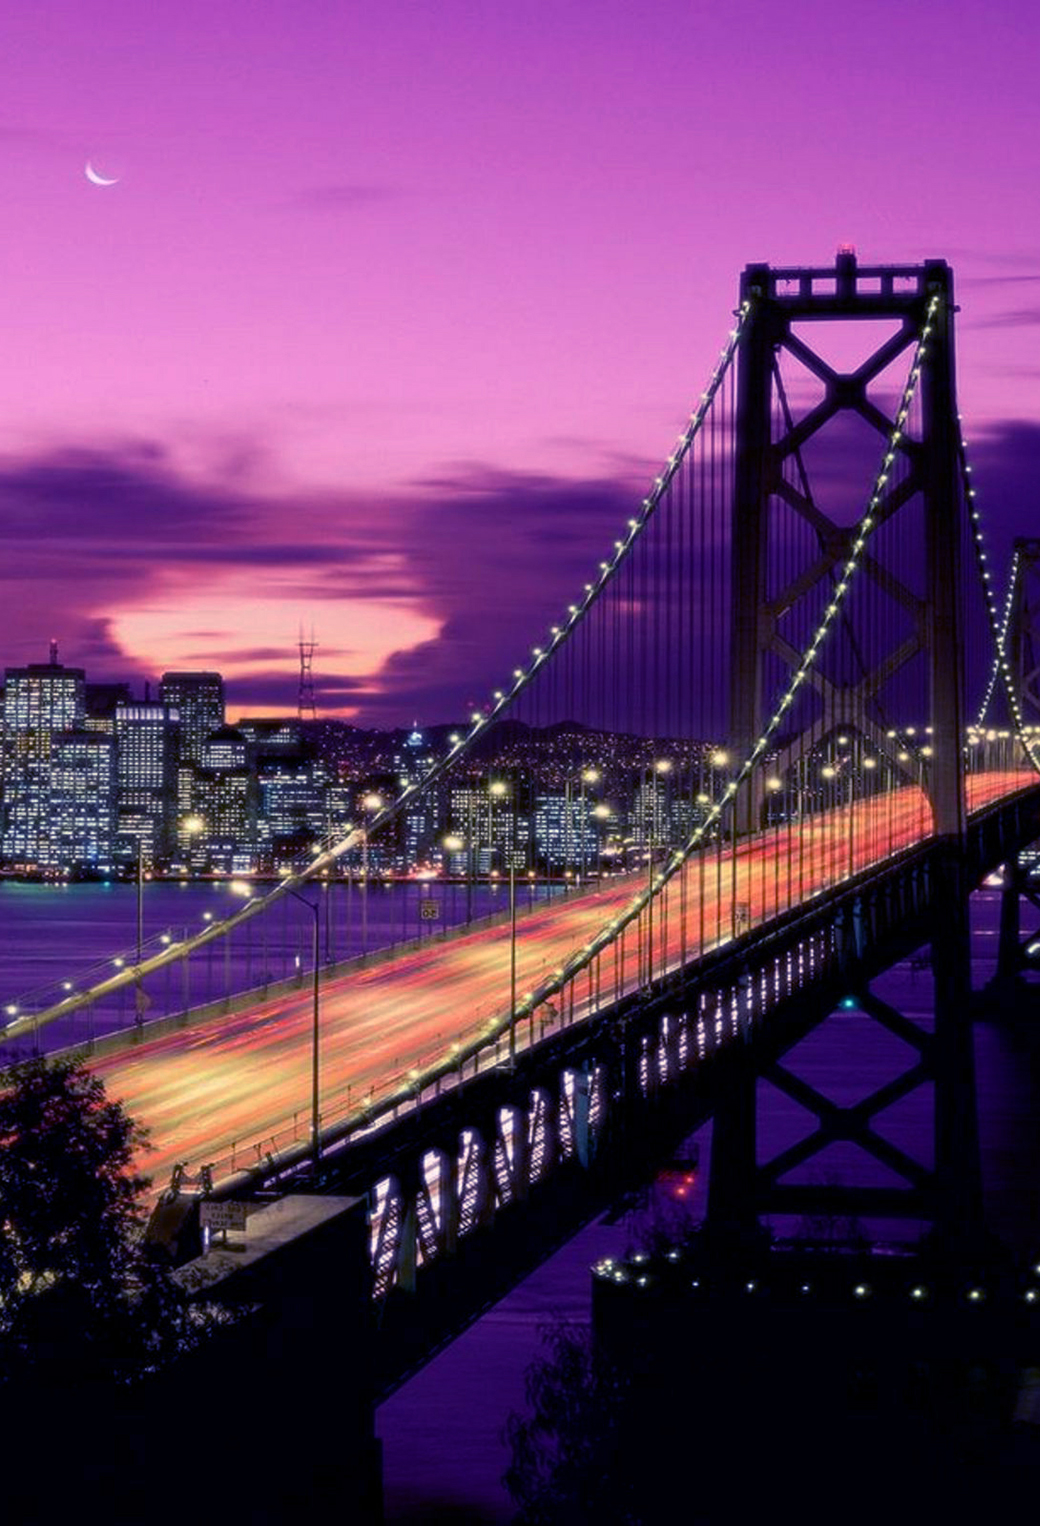 fond d'écran iphone californie,pont,ciel,pont suspendu,violet,paysage urbain